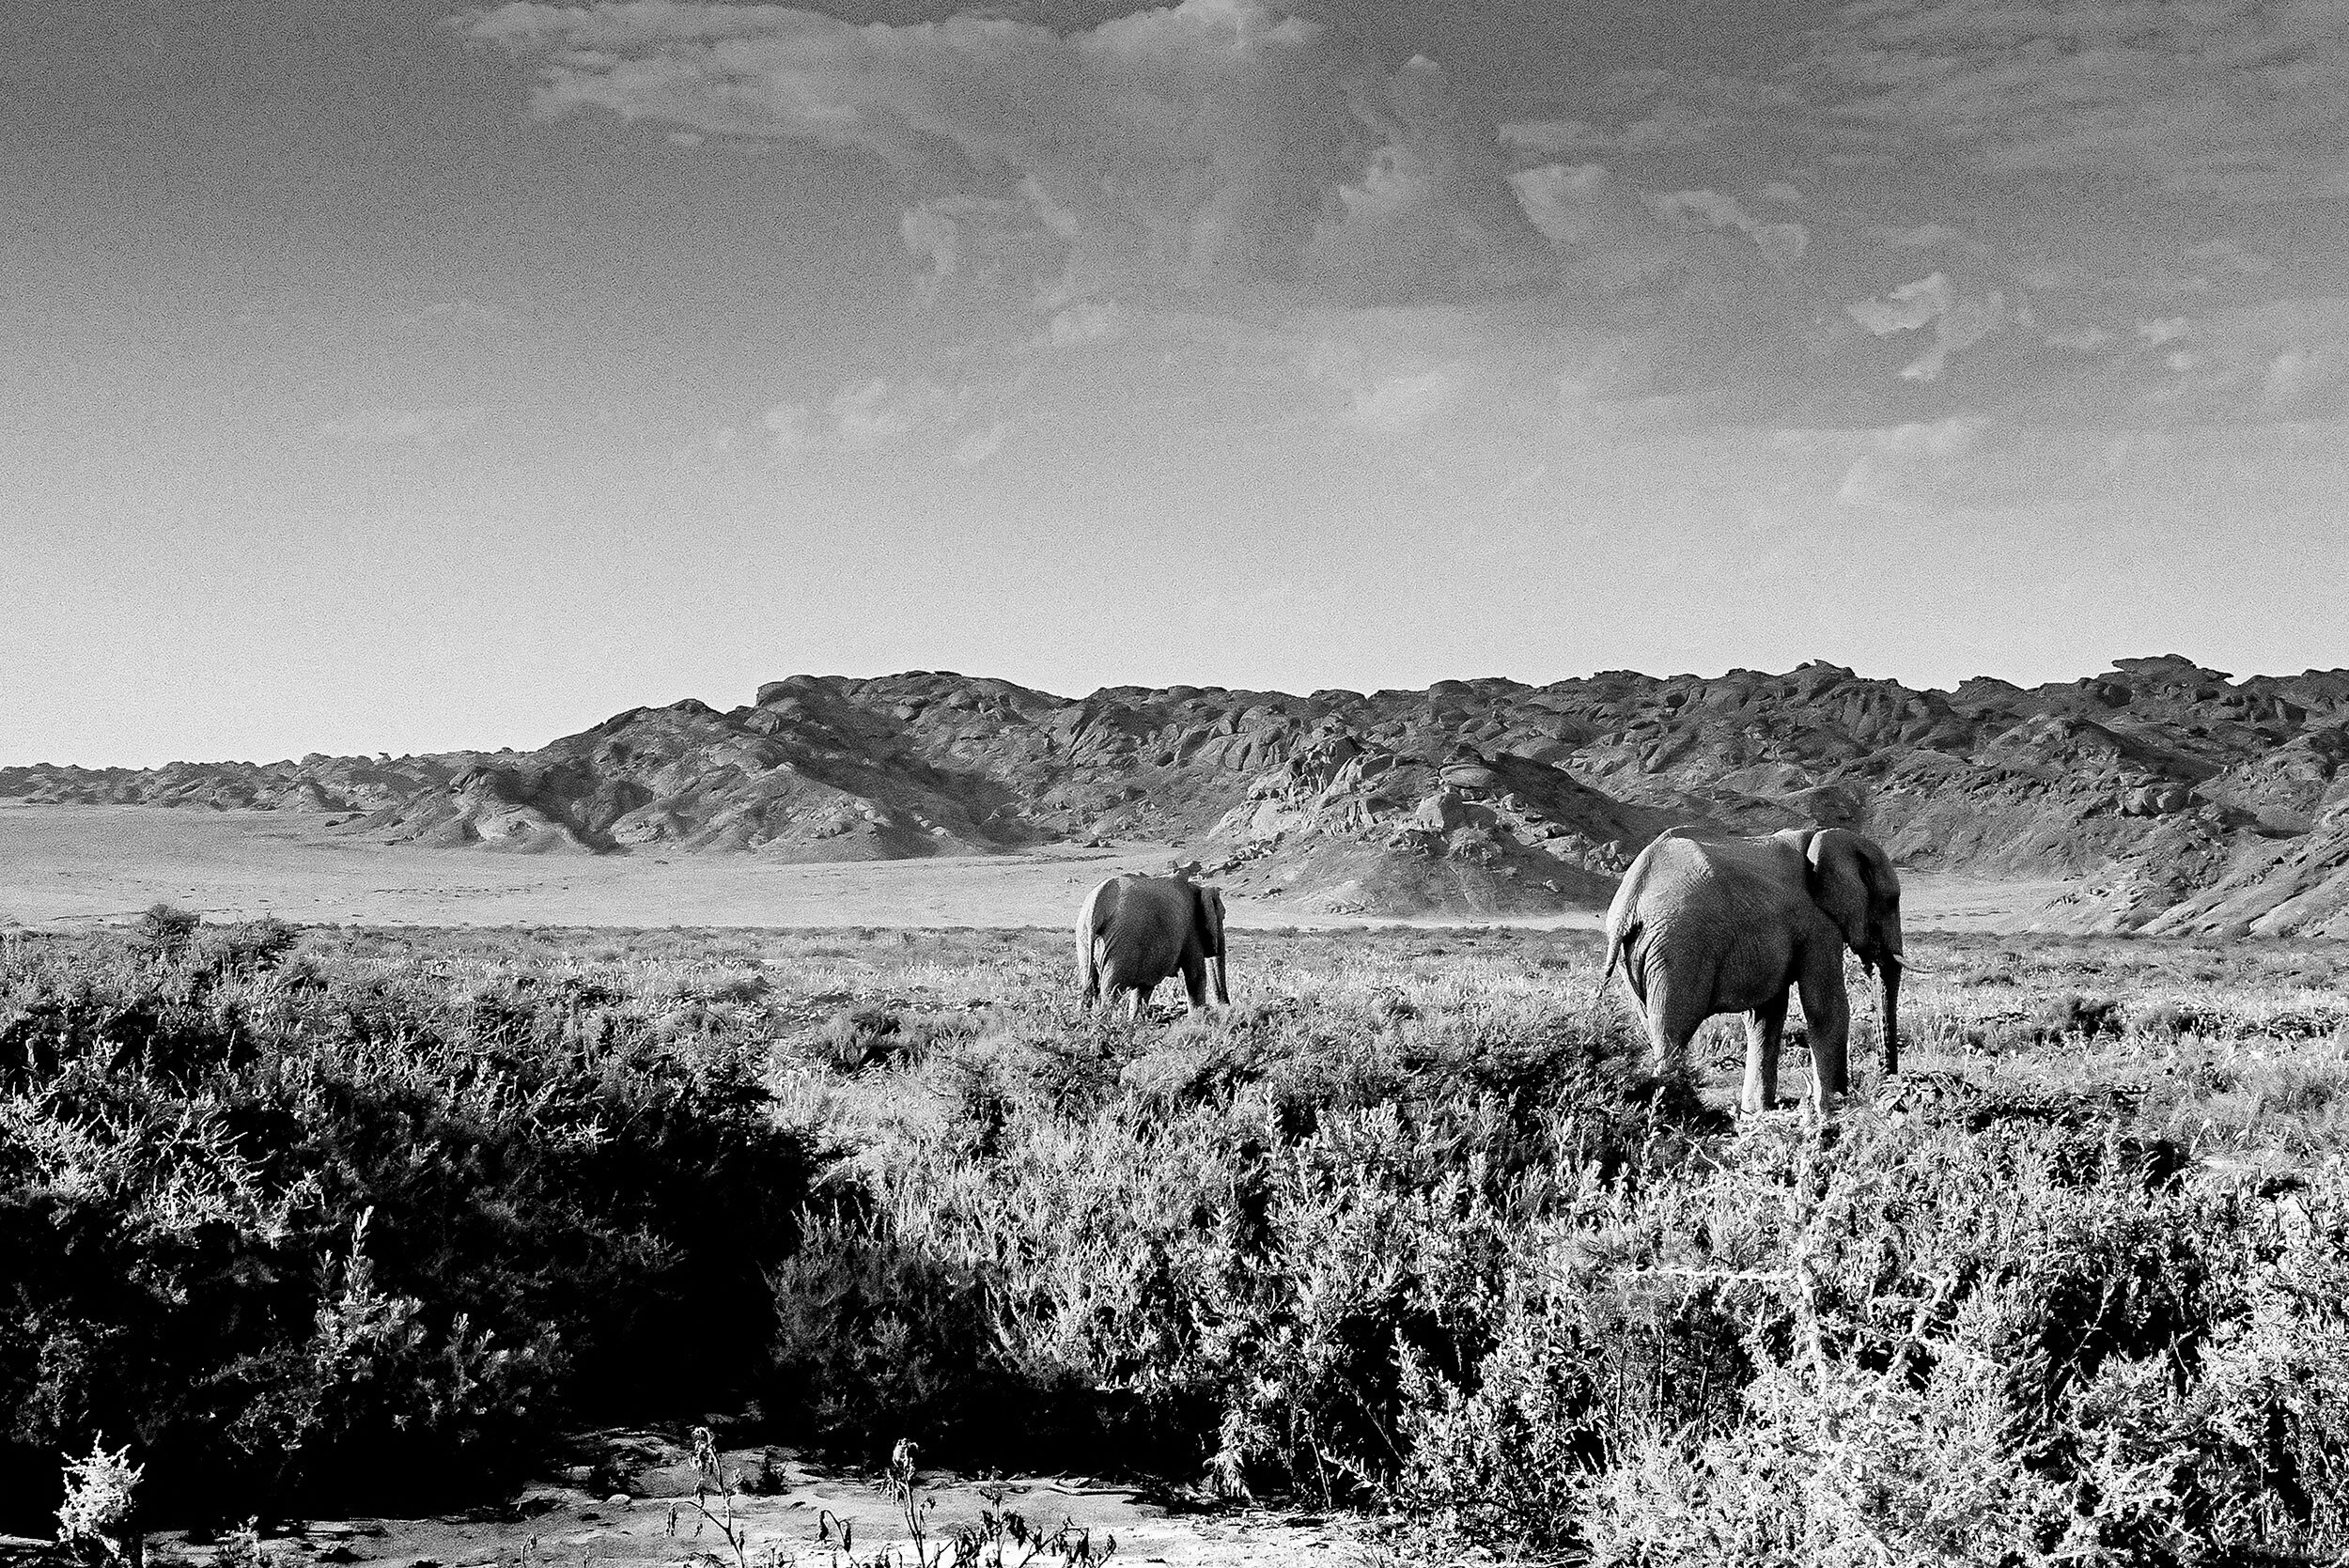 Desert-adapted-elephants.jpg